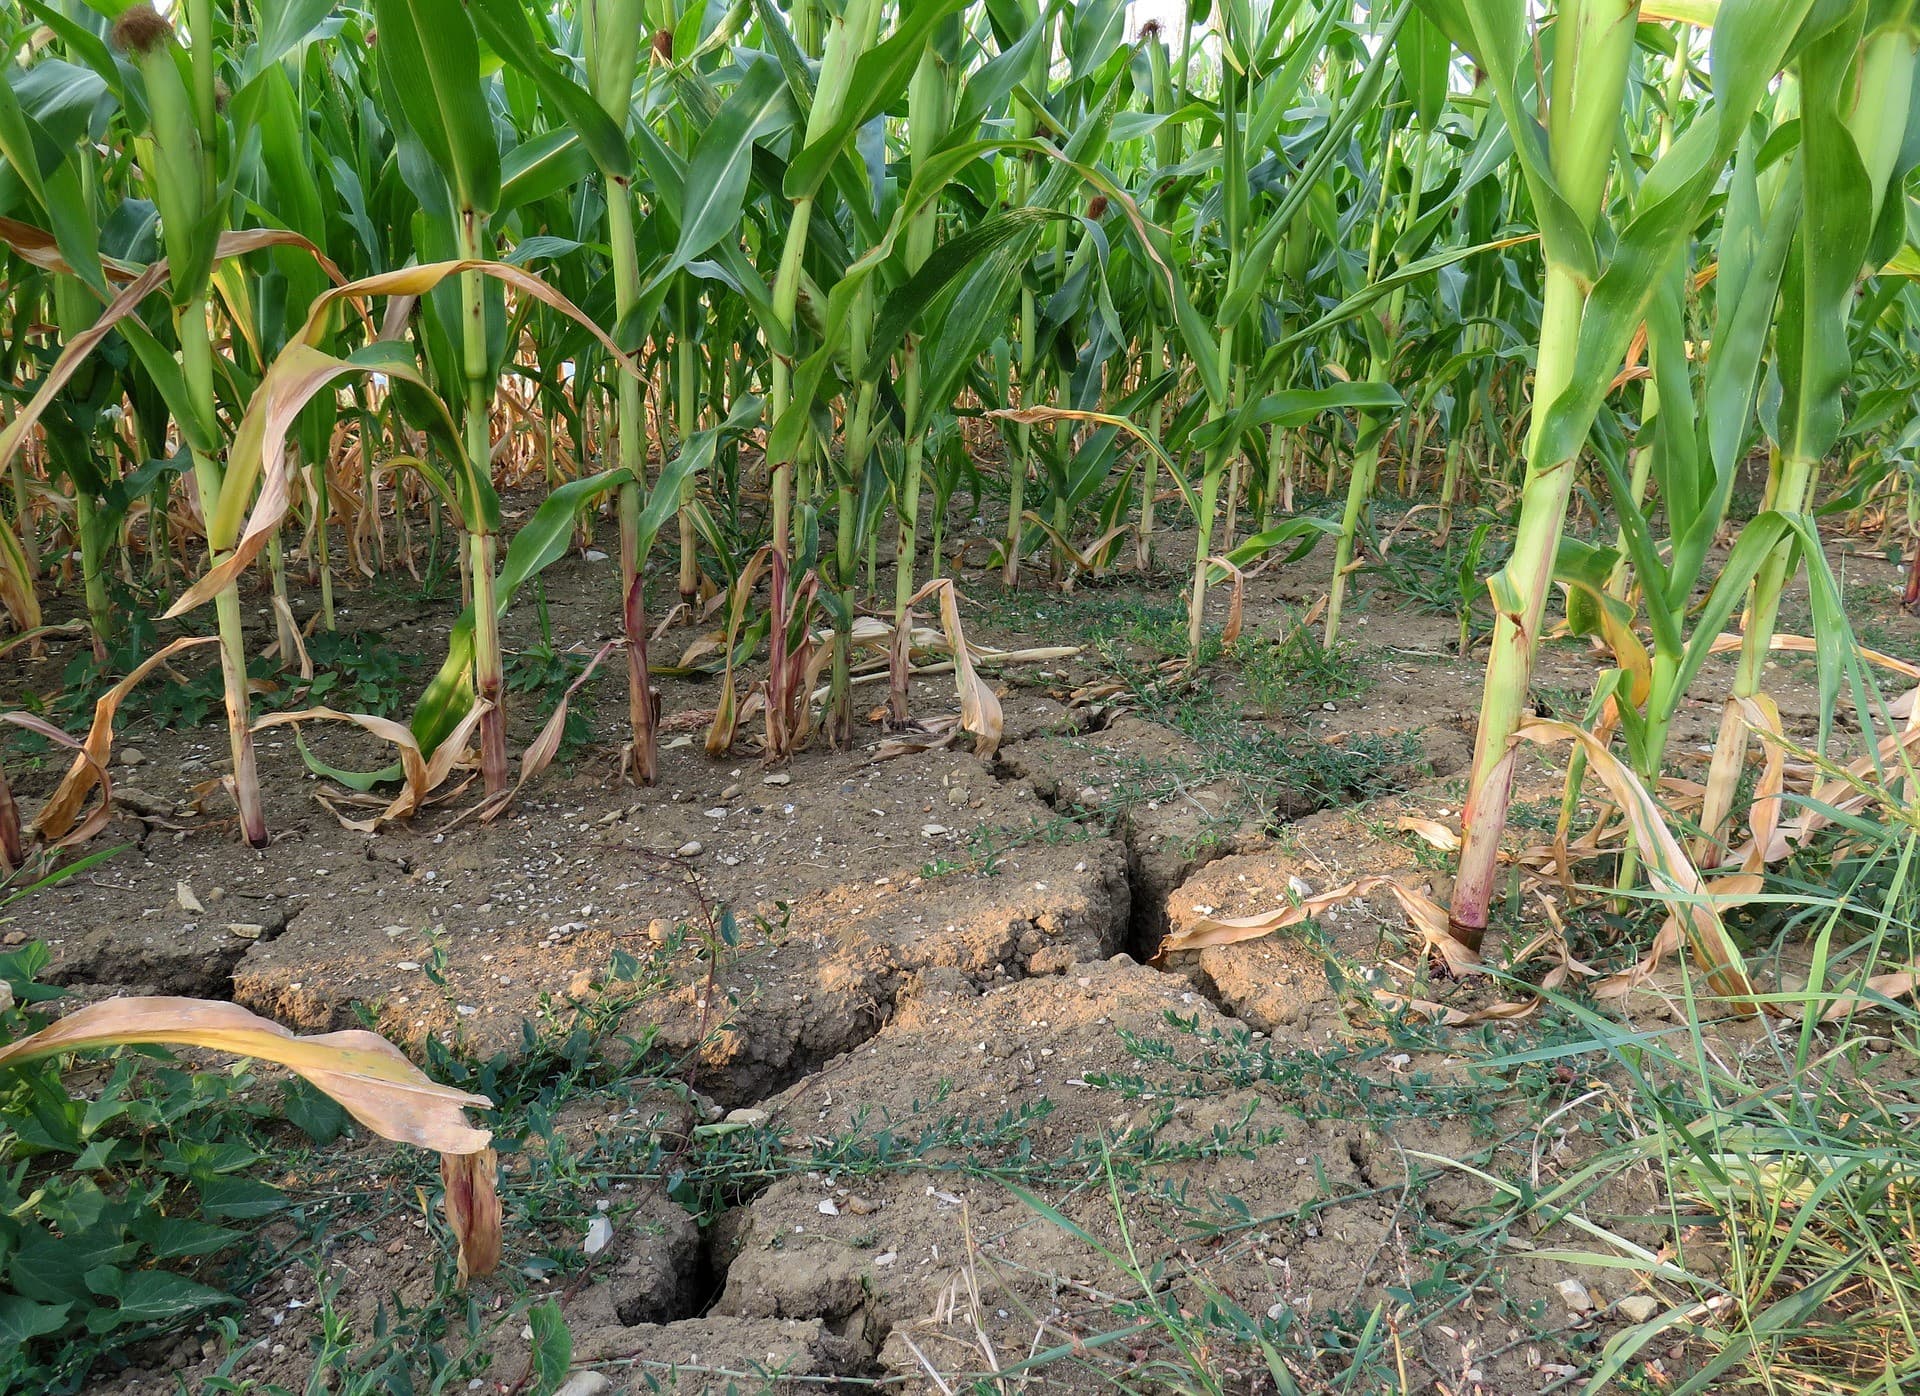 Corn in dry soil